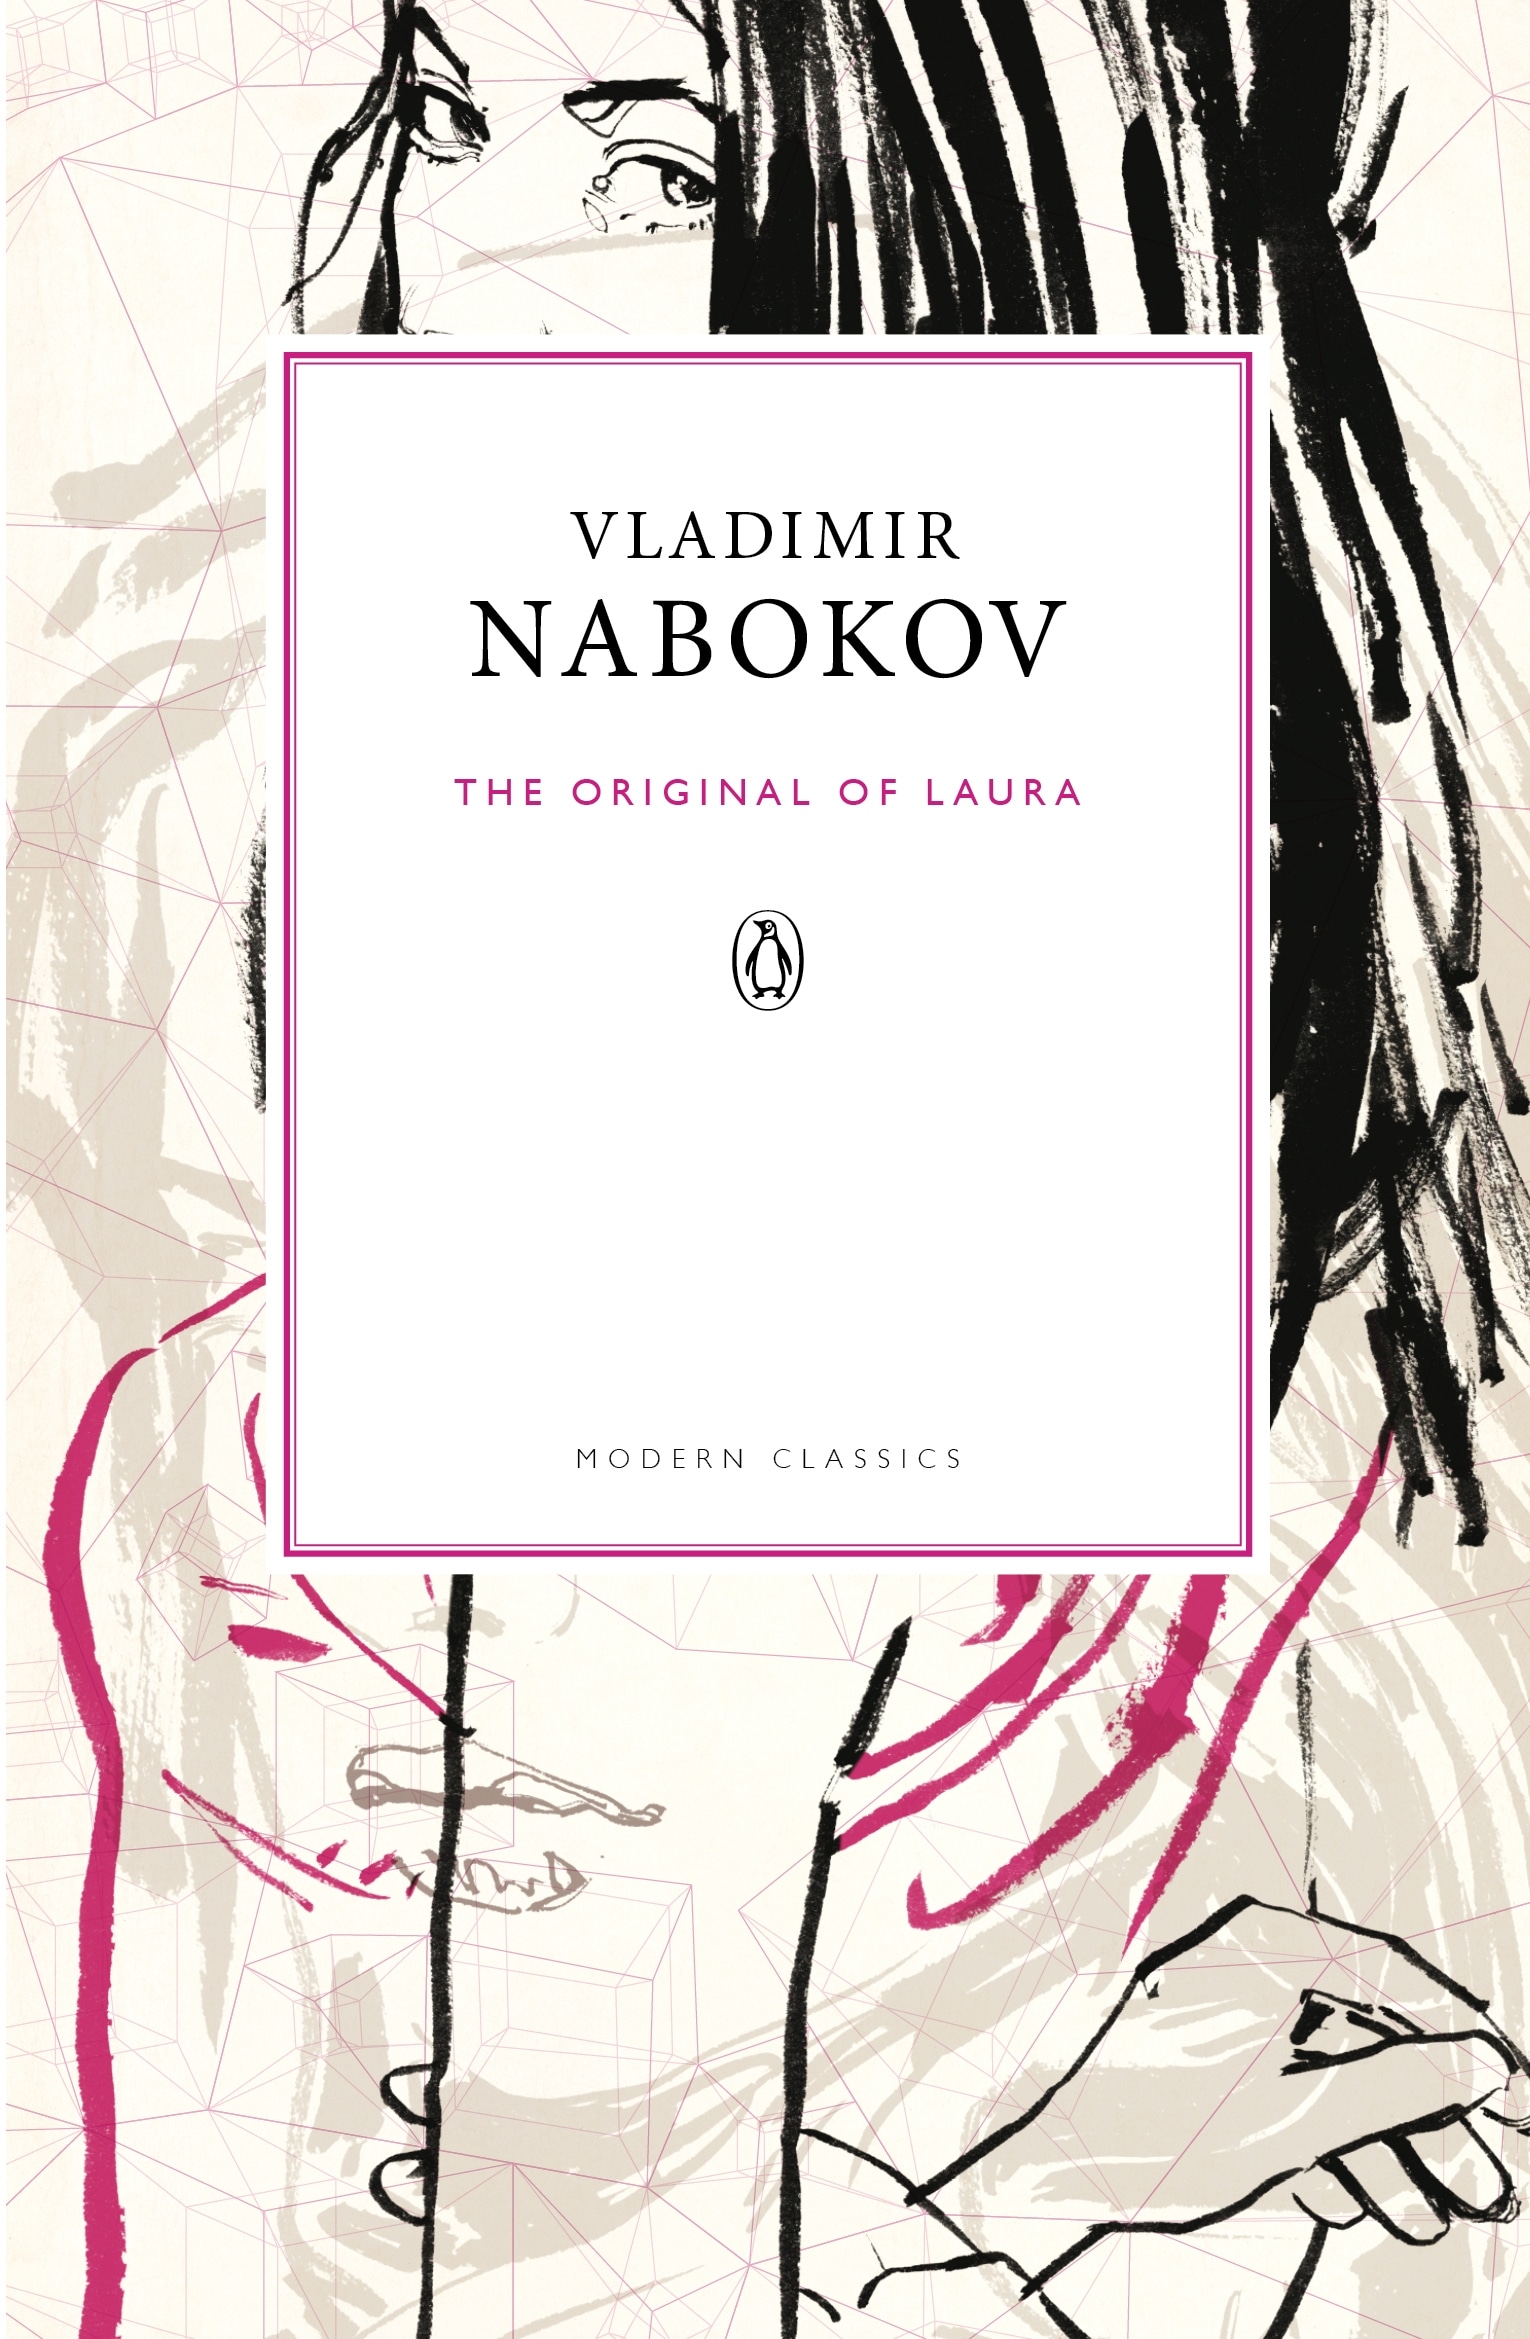 Book “The Original of Laura” by Vladimir Nabokov, Dmitri Nabokov — December 6, 2012